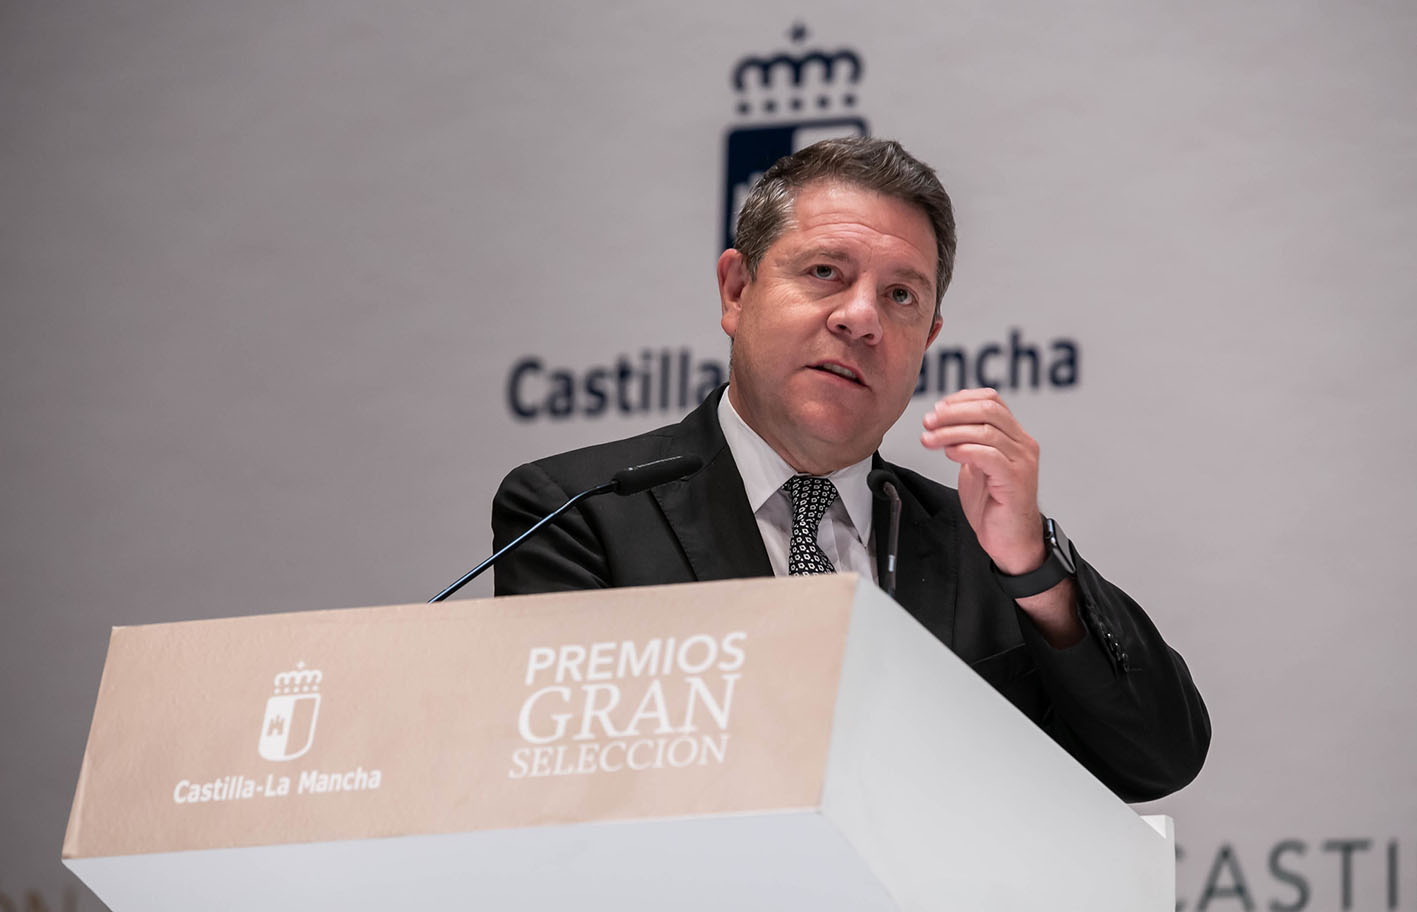 El presidente de Castilla-La Mancha, Emiliano García-Page, ha anunciado el adelanto de la segunda dosis de AstraZeneca.